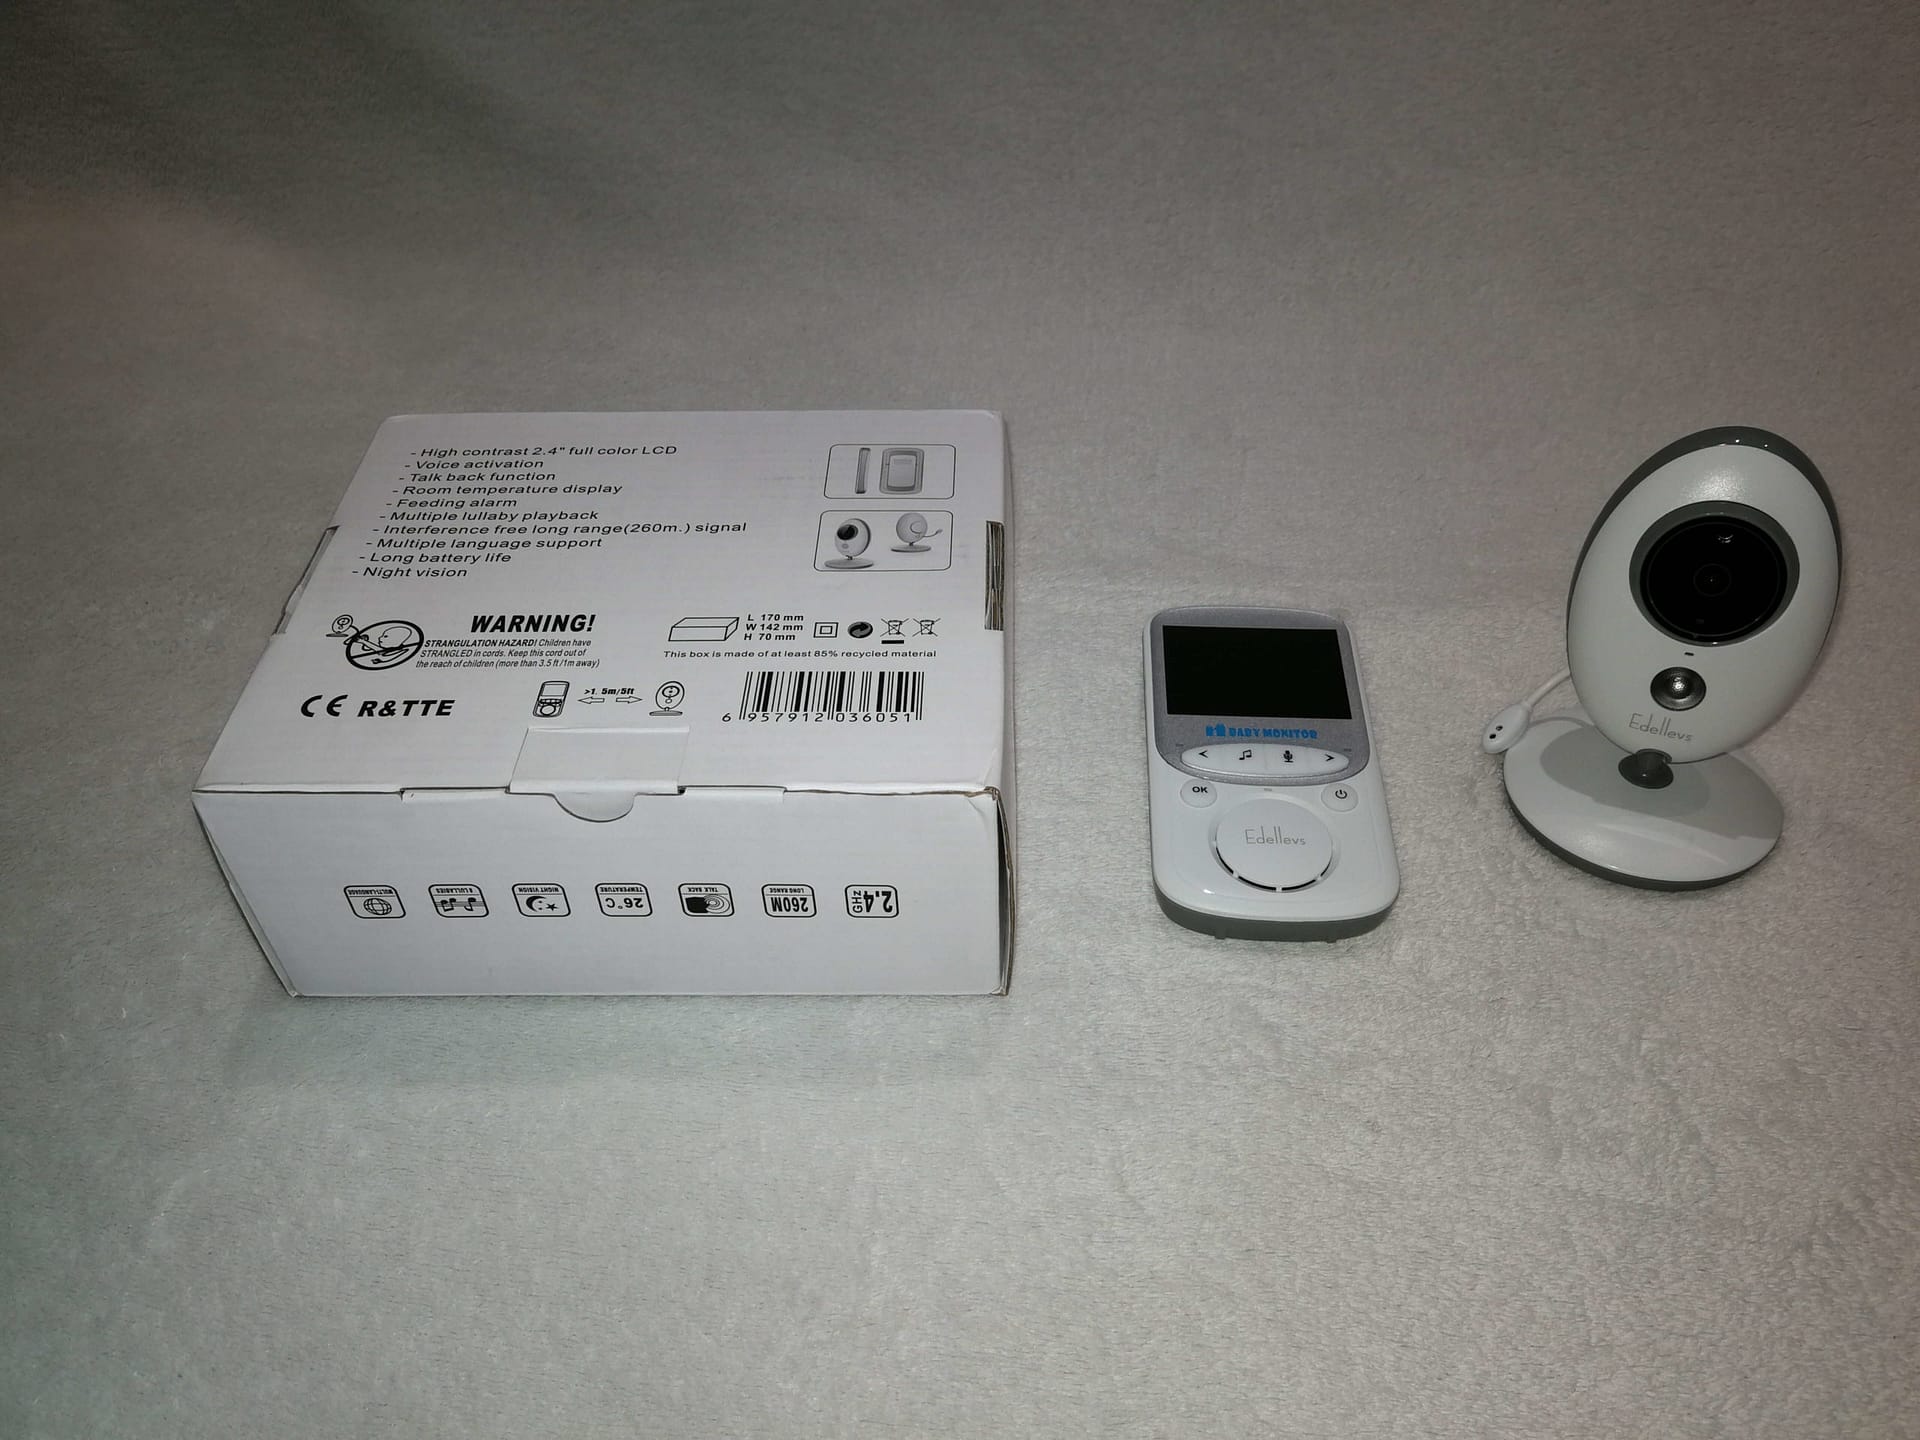 Babyphone mit Kamera im Test von Edellevs